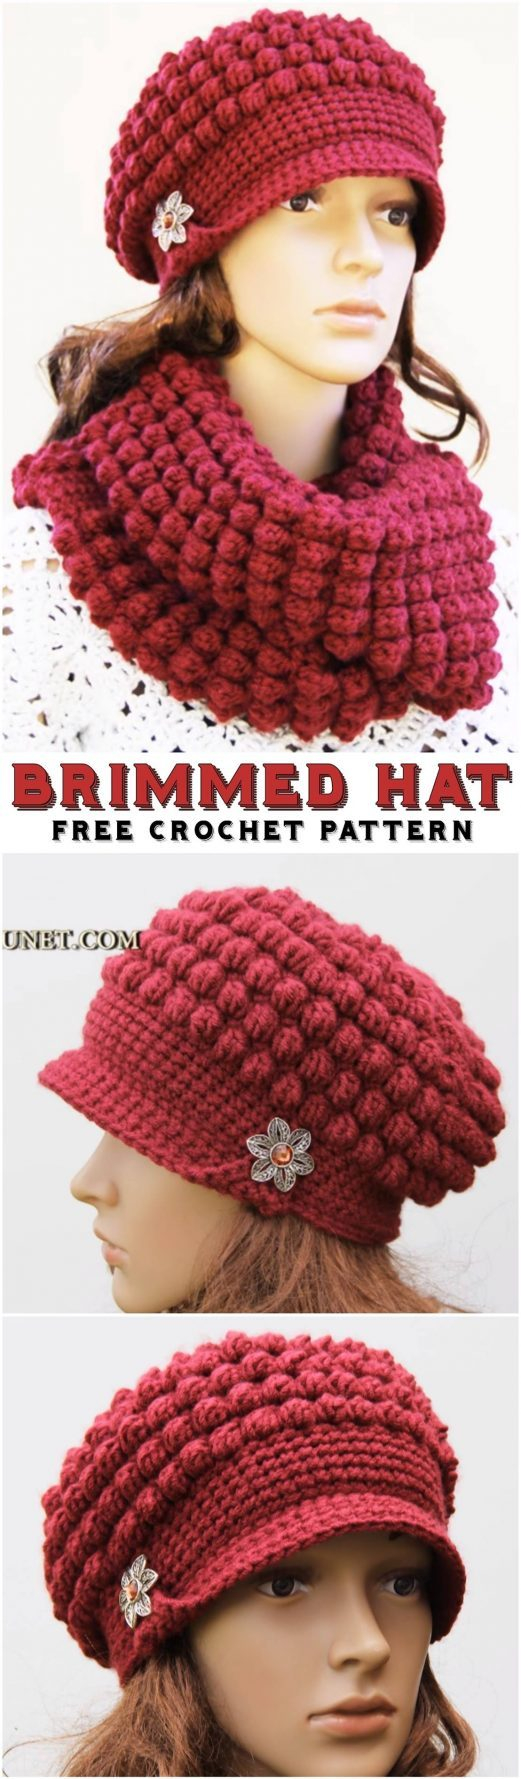 Crochet Winter Hat Free Pattern Crochet Brimmed Hat Free Pattern Yarn Hooks